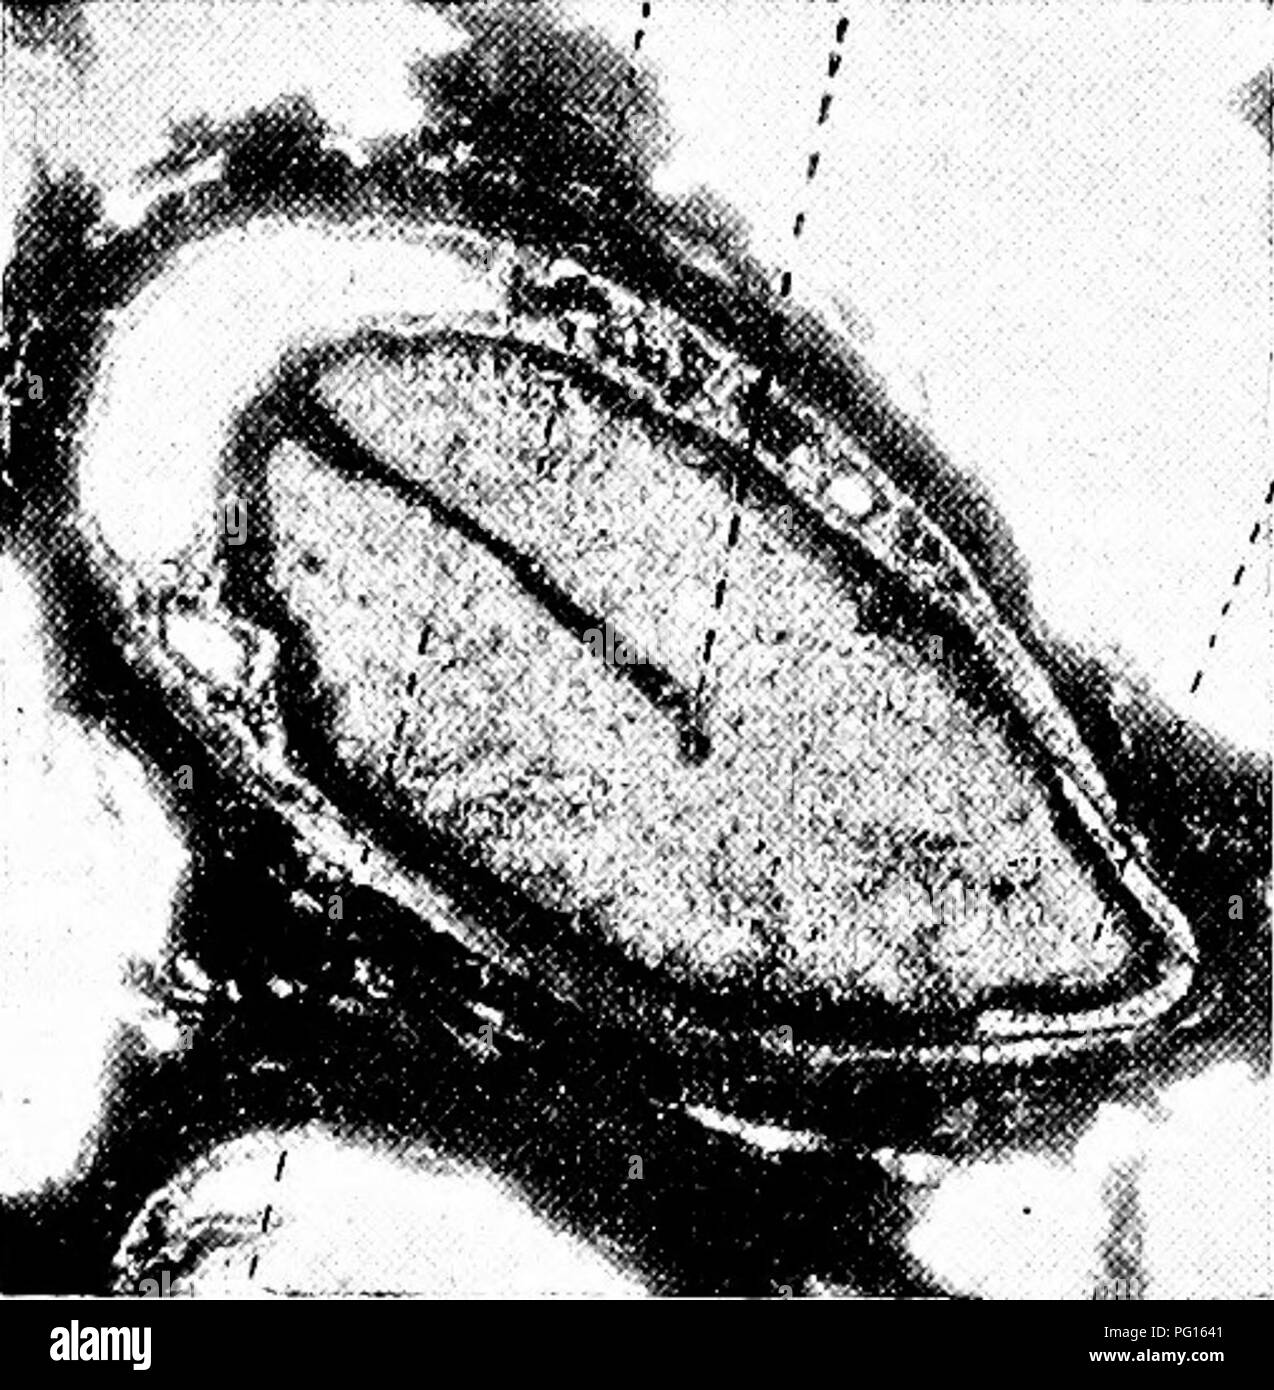 . Gli studi di botanica fossile . Paleobotanica. un 574 studi di botanica di fossili anche se è del tutto possibile che qui, come nella maggior parte dei cosiddetti exalbuminous semi, alcuni lievi rimane dell'endosperma persistente. La piccola massa di tessuto contrassegnato e in Fig. 203, D, in cui i nuclei sembrano essere conservate, può essere probabilmente una parte dei restanti endosperma, sebbene possa anche essere interpretato come appartenente alla radice-cap del radicle embrionale. L embrione è molto ben conservato, anzi Bennettiteae permettersi il solo nei casi in cui è stato possibile studiare gli embrioni di piante fossili in dettaglio. Foto Stock